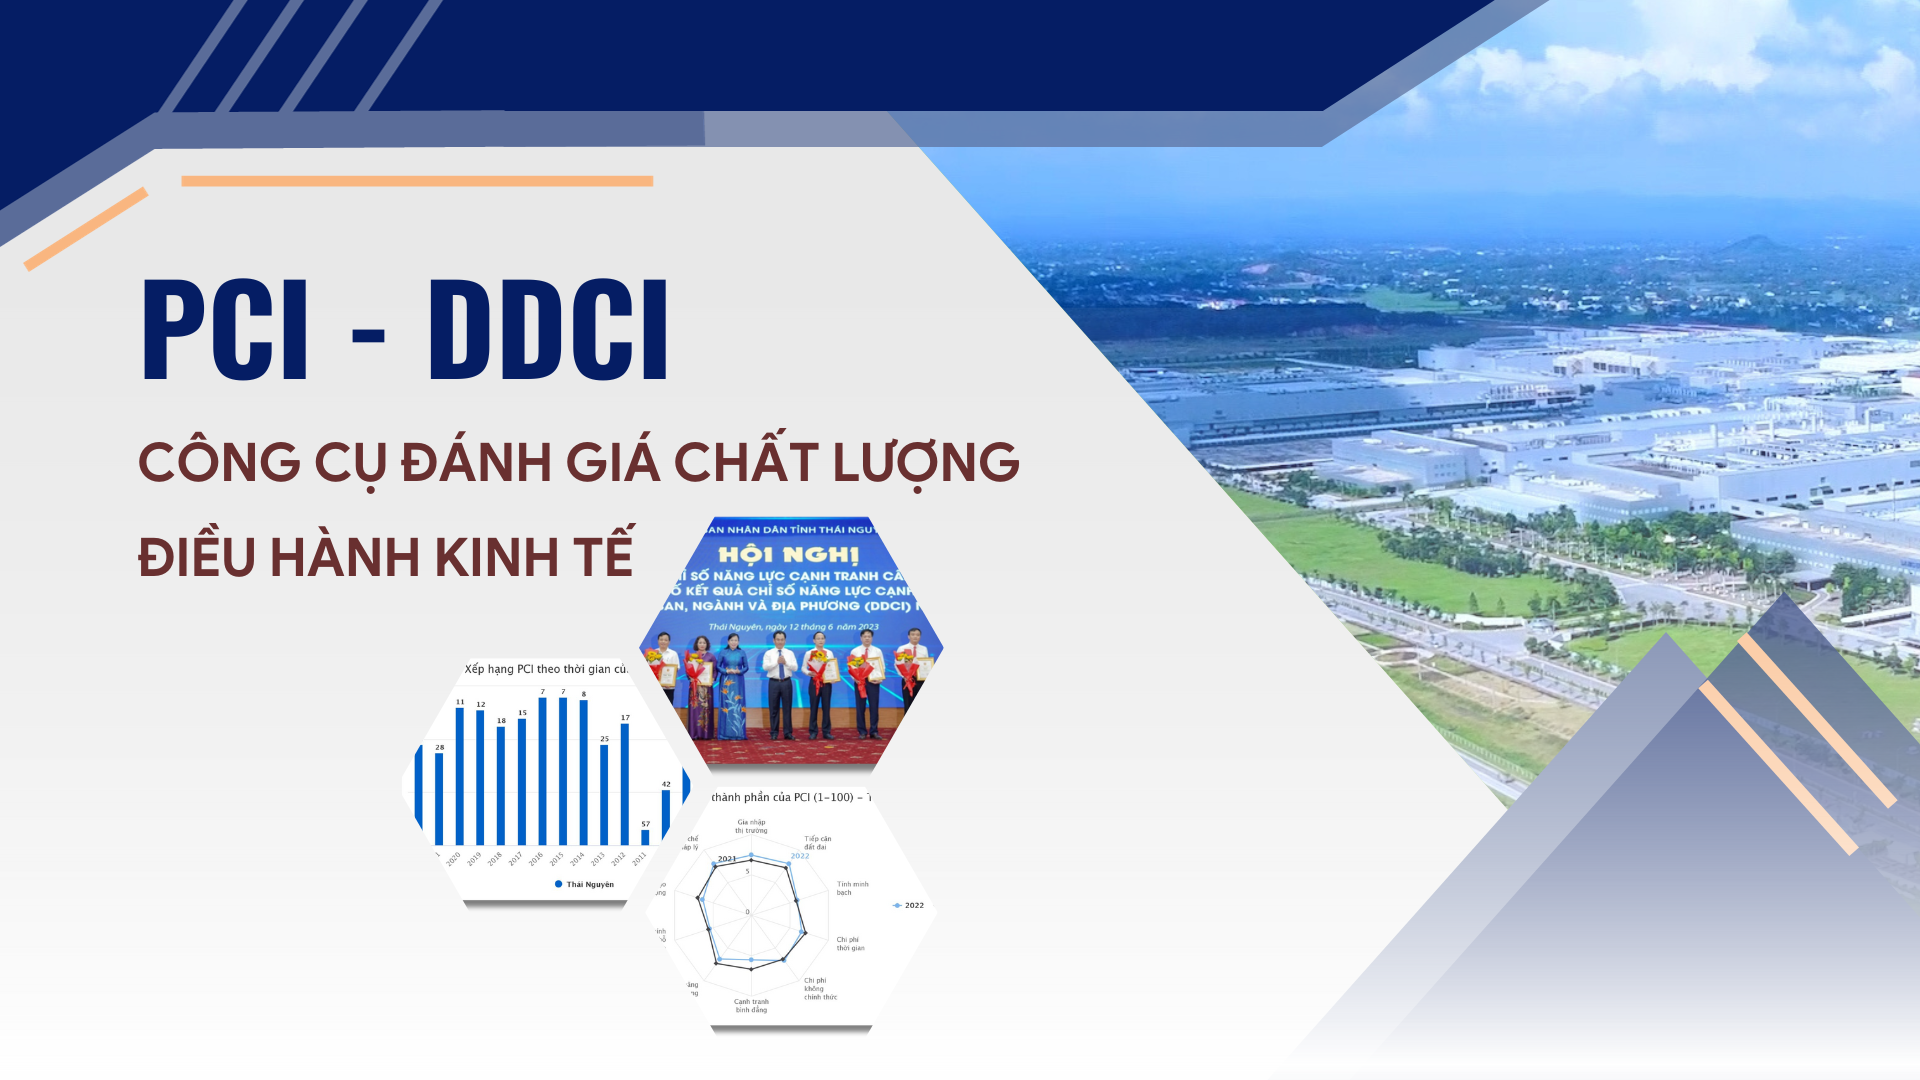 PCI - DDCI: Công cụ đánh giá chất lượng điều hành kinh tế